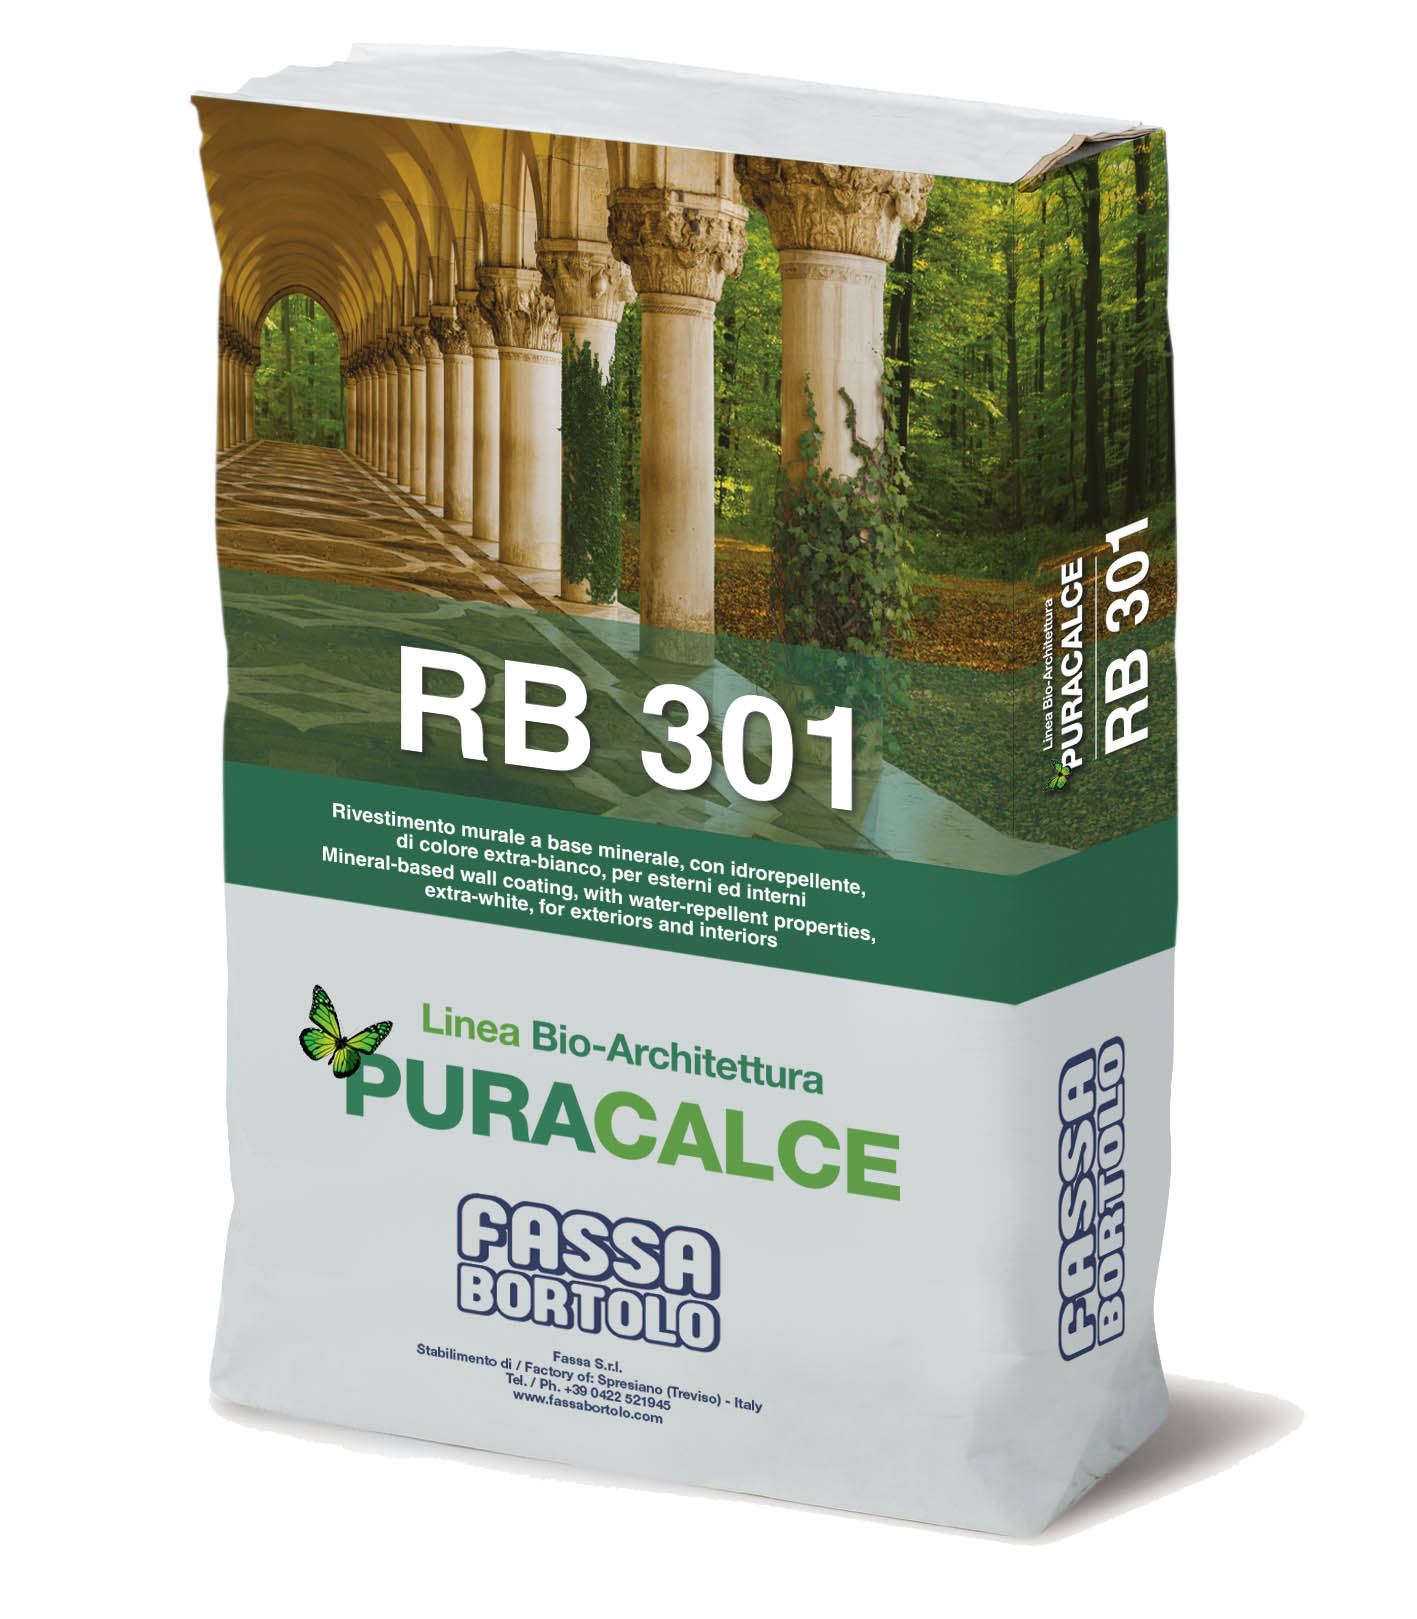 RB 301: Bio-rivestimento murale extra bianco a base minerale per esterni ed interni